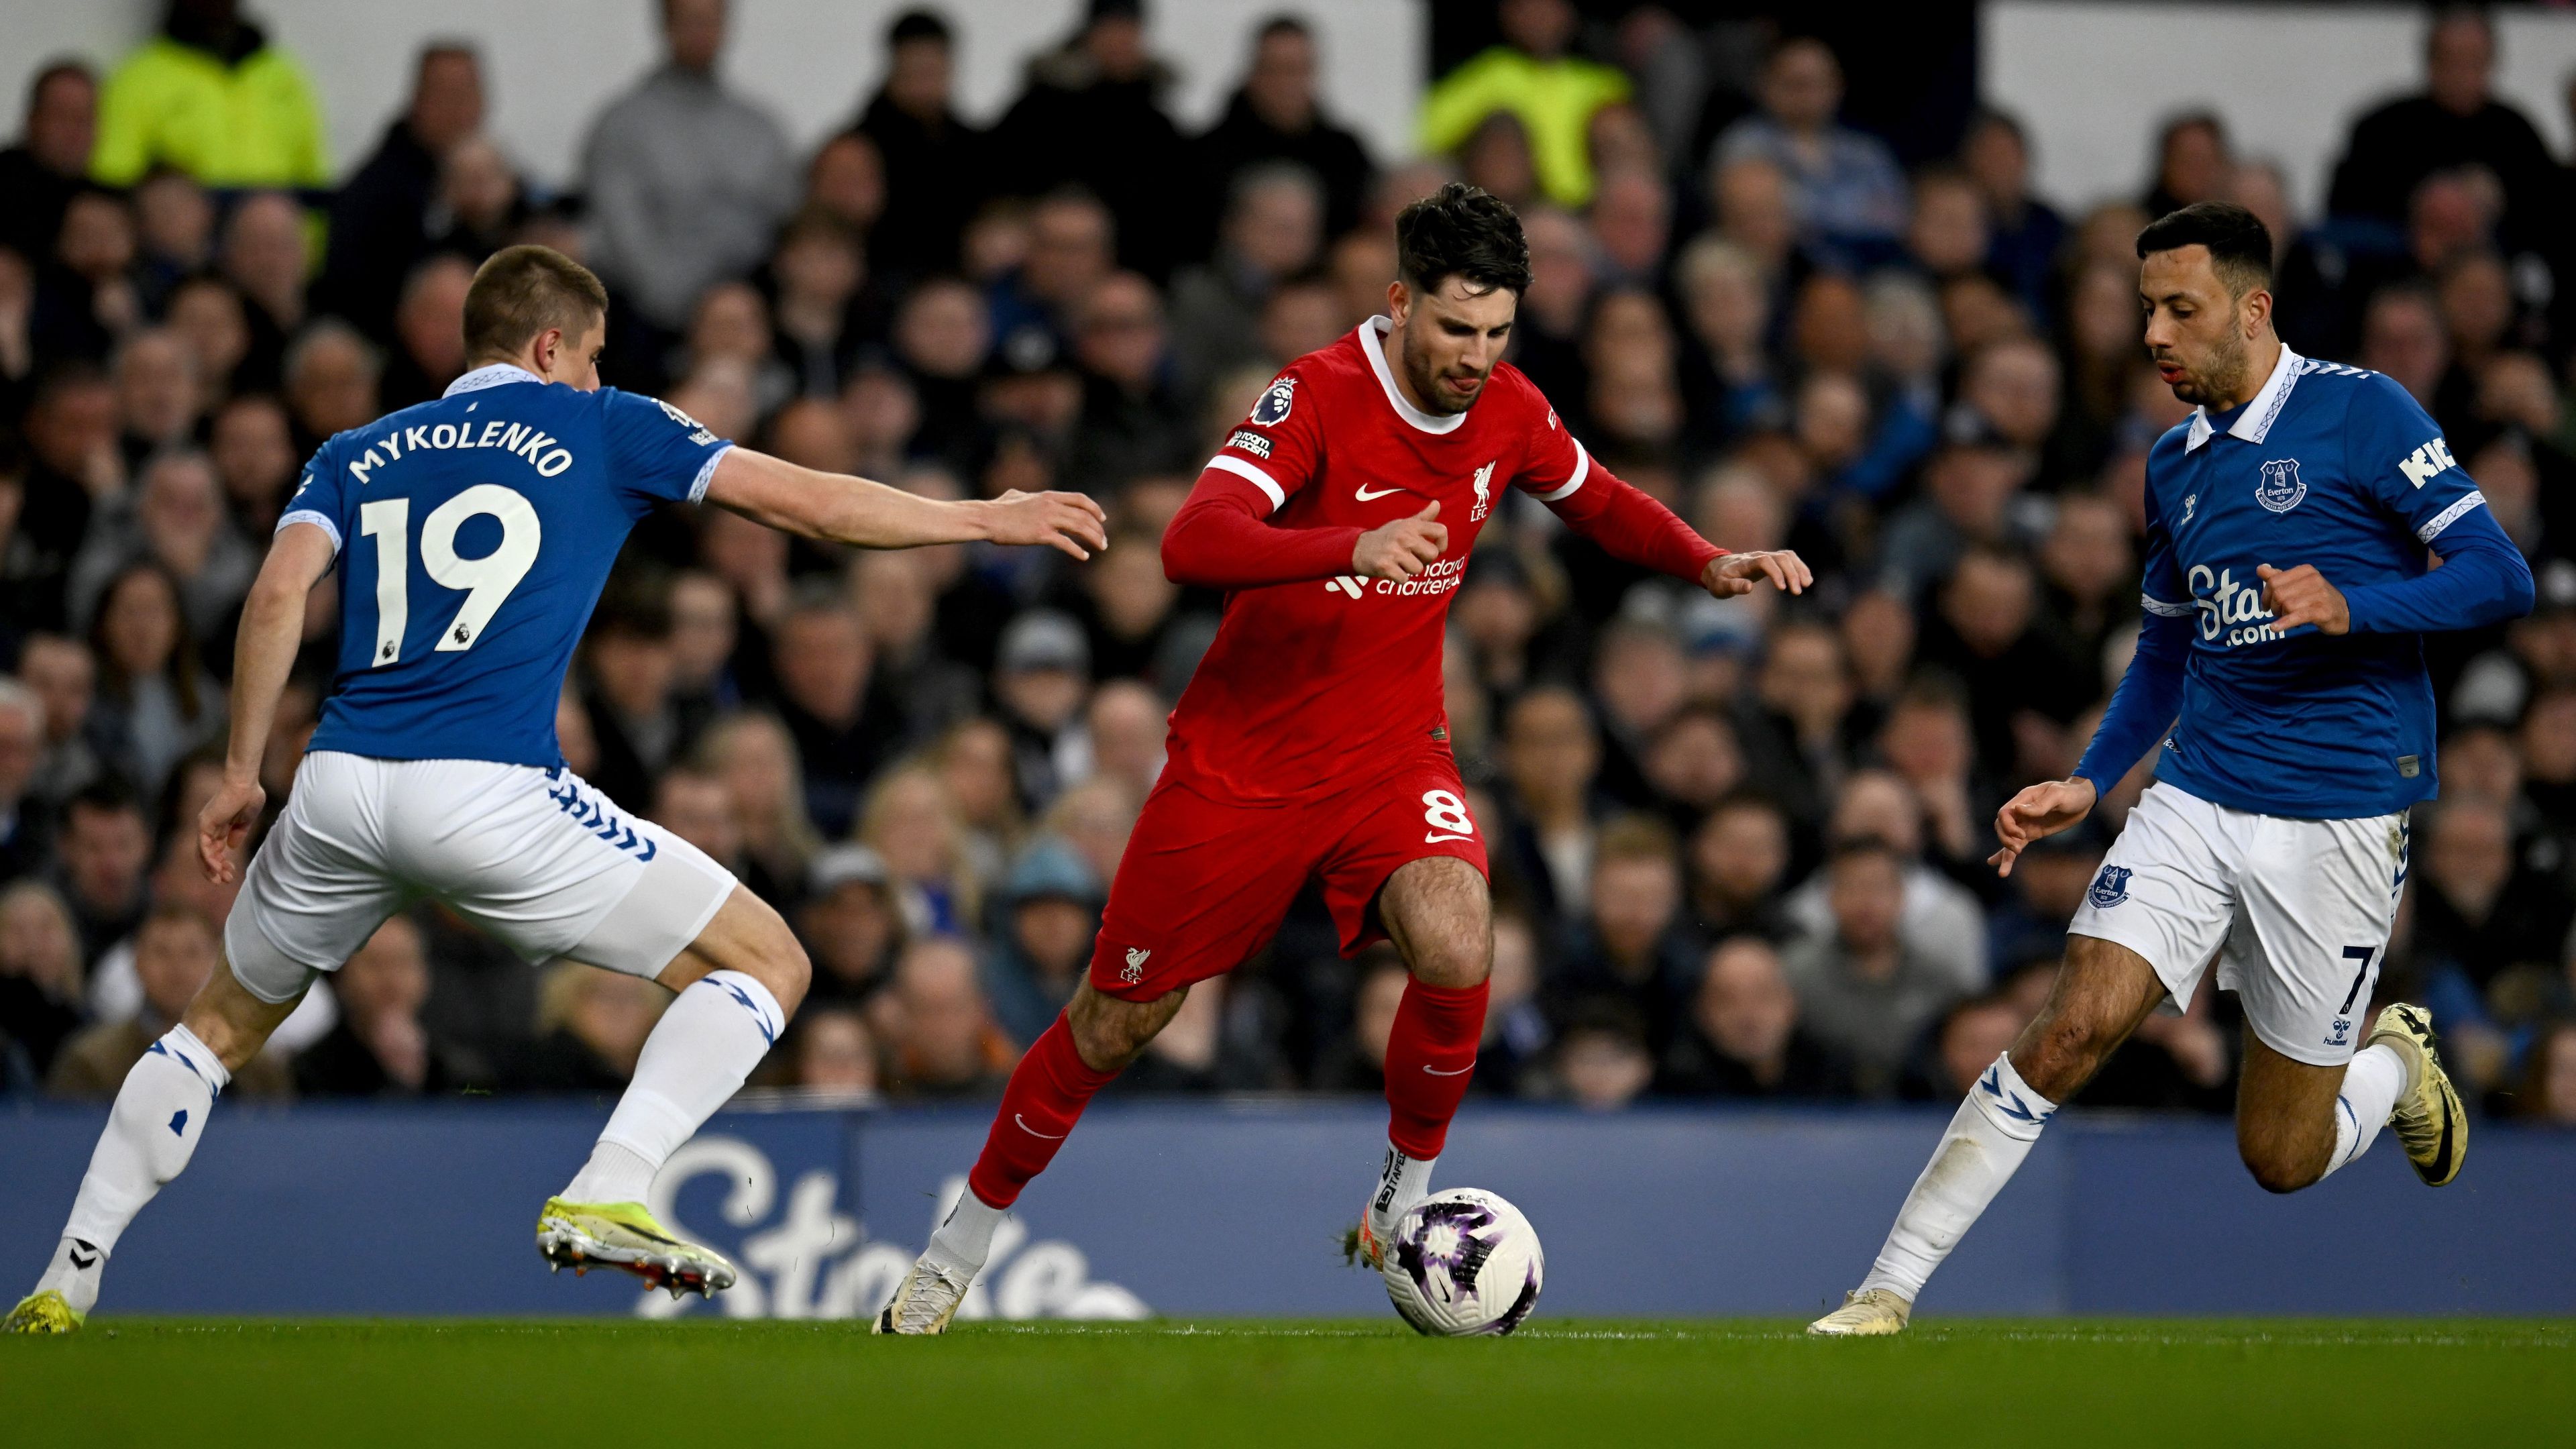 A Liverpool – Szoboszlai Dominikkel a kezdőcsapatban – fontos három pontot veszített el az Everton elleni vereséggel. (Fotó: Getty Images)